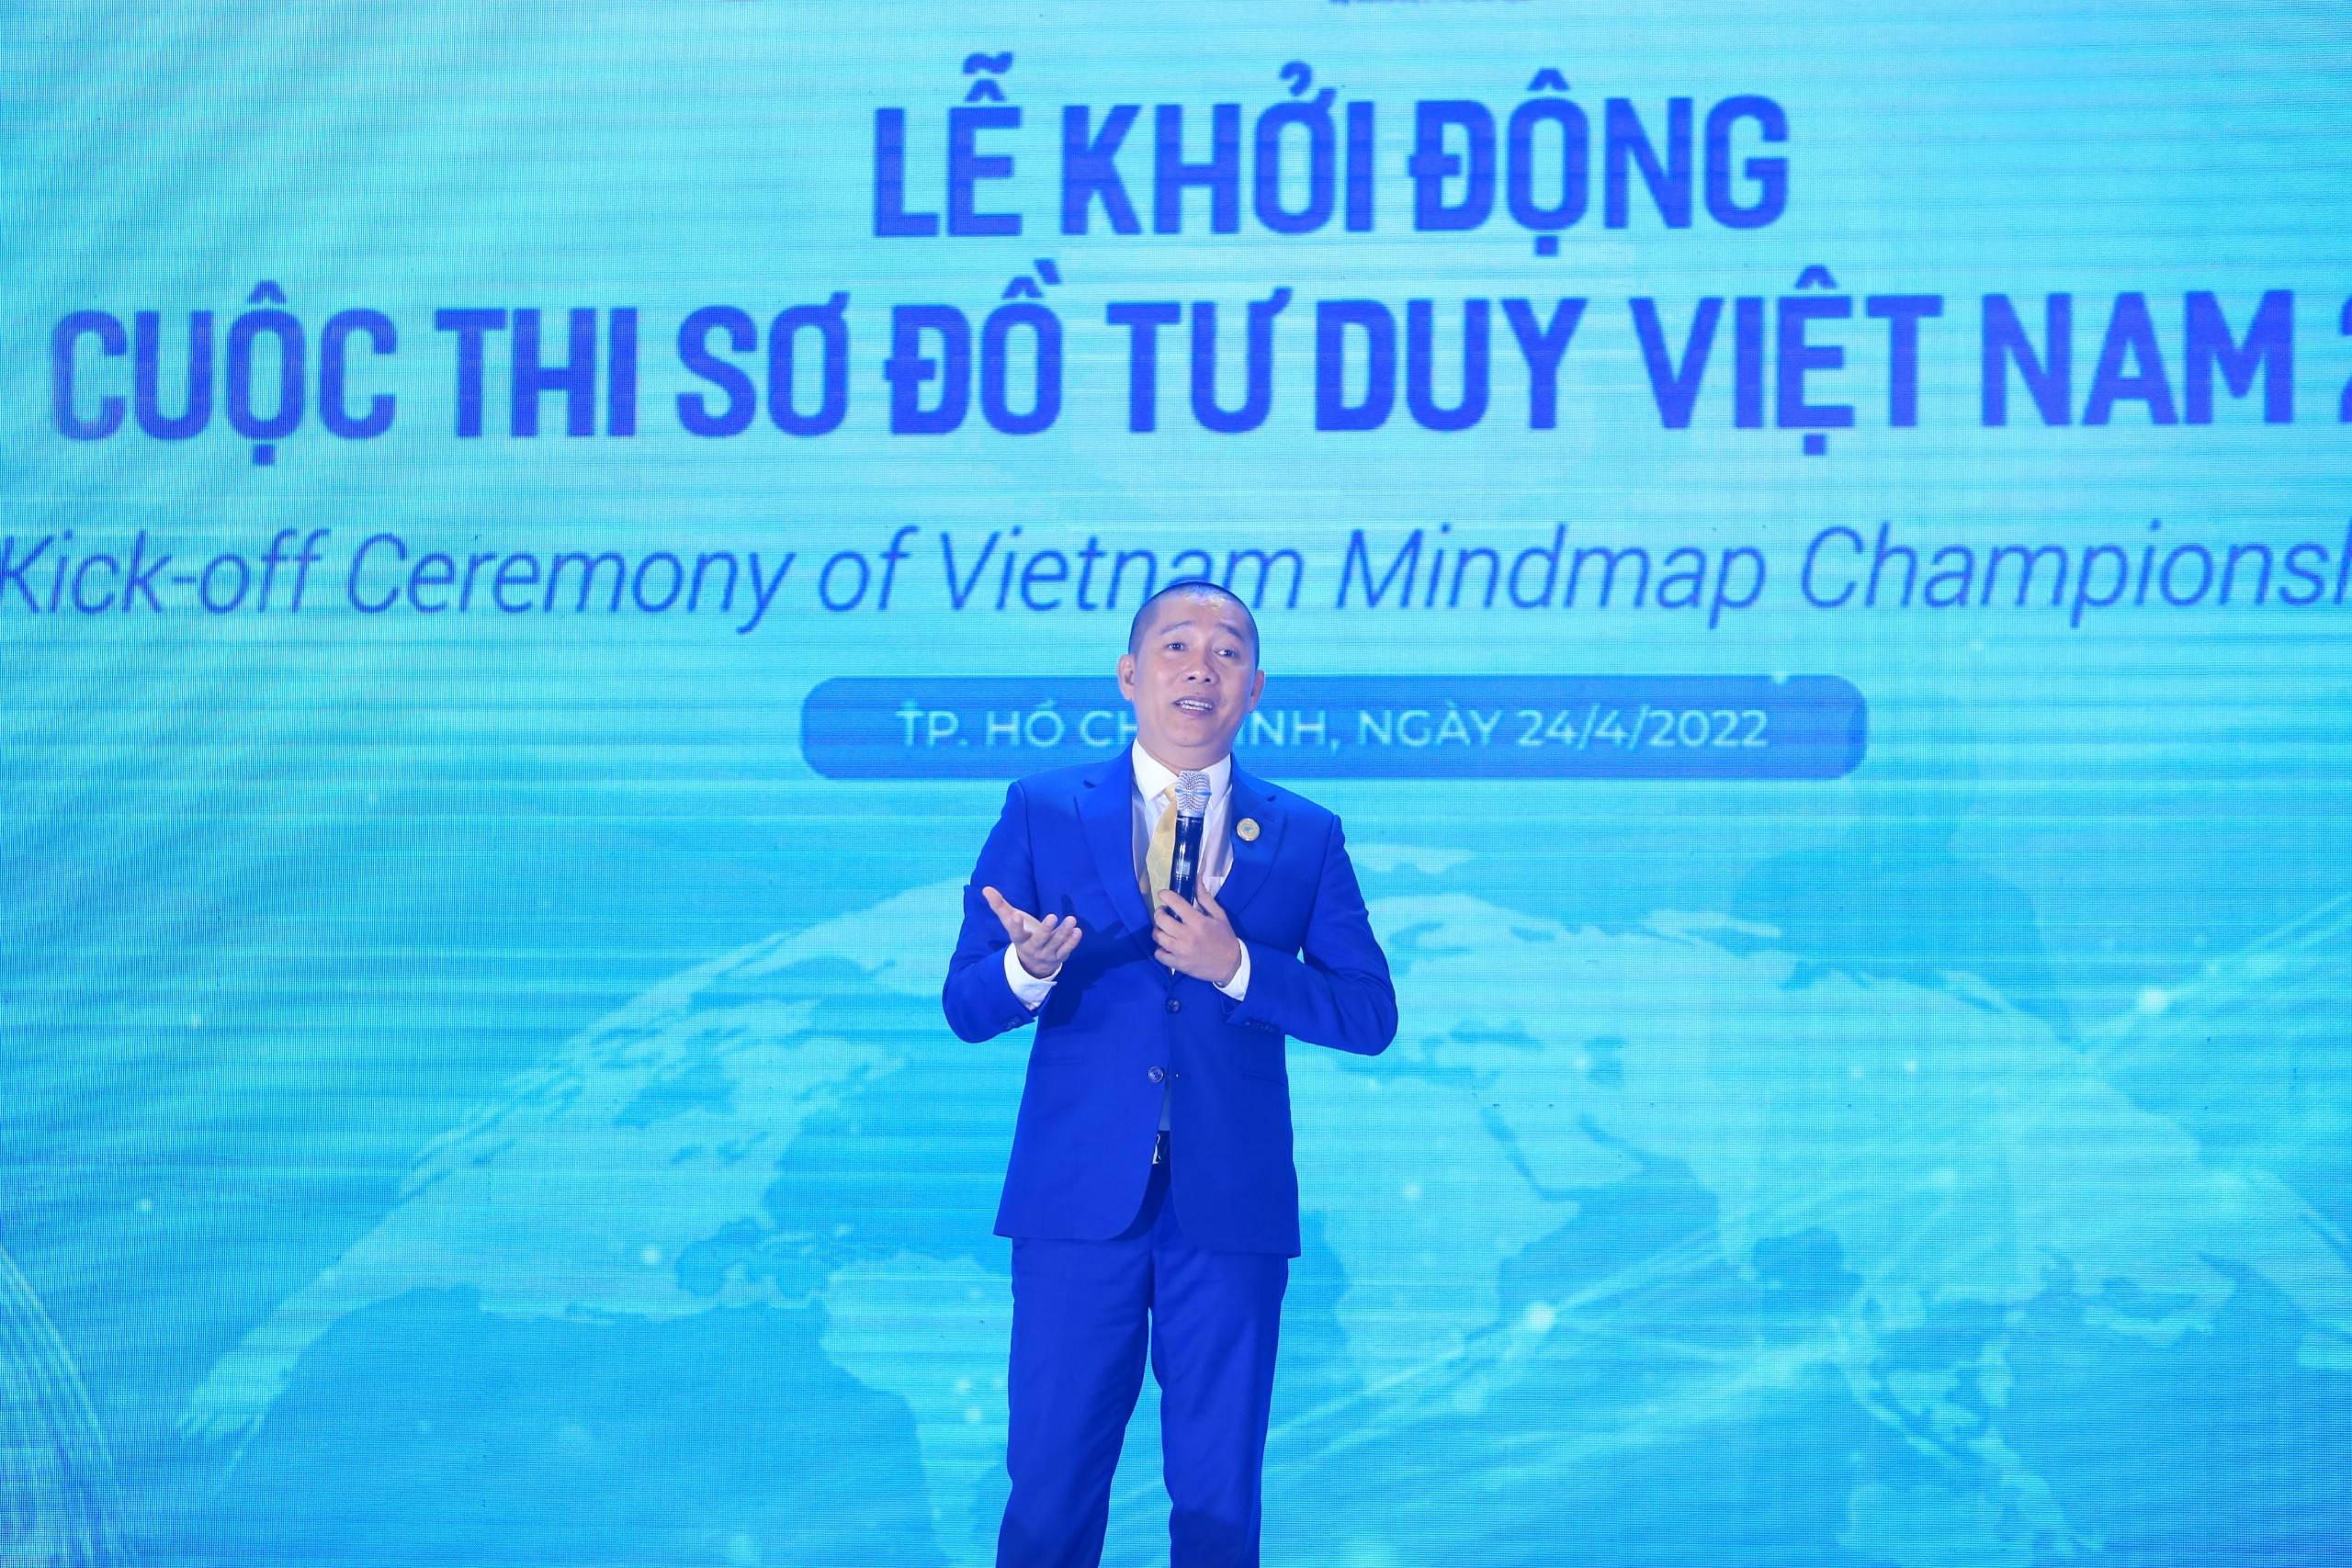 Sơ đồ tư duy Việt Nam 2022: Sơ đồ tư duy là công cụ hữu ích giúp bạn sắp xếp ý tưởng, kết nối các thông tin và phân tích vấn đề một cách khoa học. Đặc biệt với sơ đồ tư duy Việt Nam 2022, bạn sẽ cảm nhận được sự đột phá trong việc tổ chức thông tin. Hãy xem thử sơ đồ tư duy này để có cái nhìn toàn diện về Việt Nam và tương lai của đất nước.